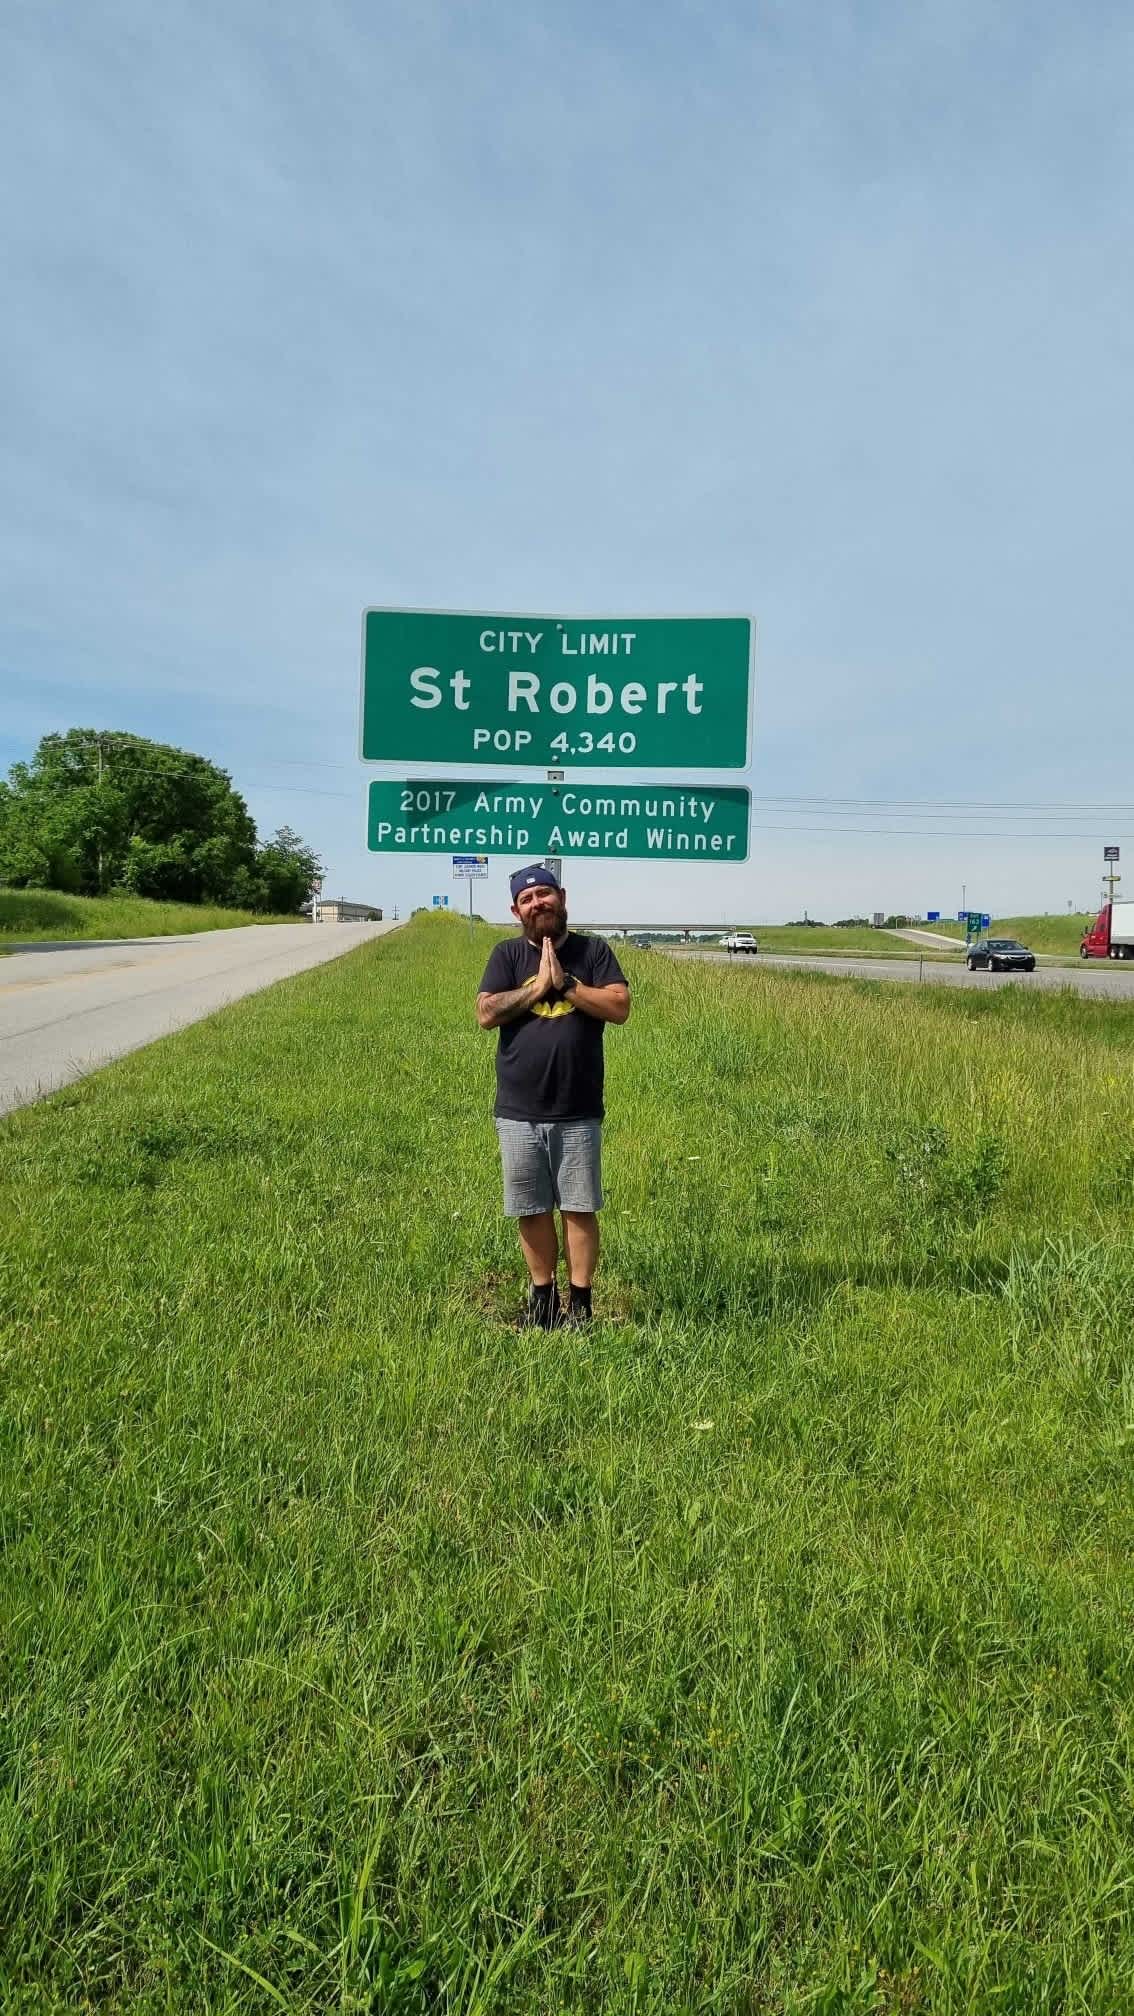 Roberta miejsce na amerykańskiej ziemi czy St.Robert